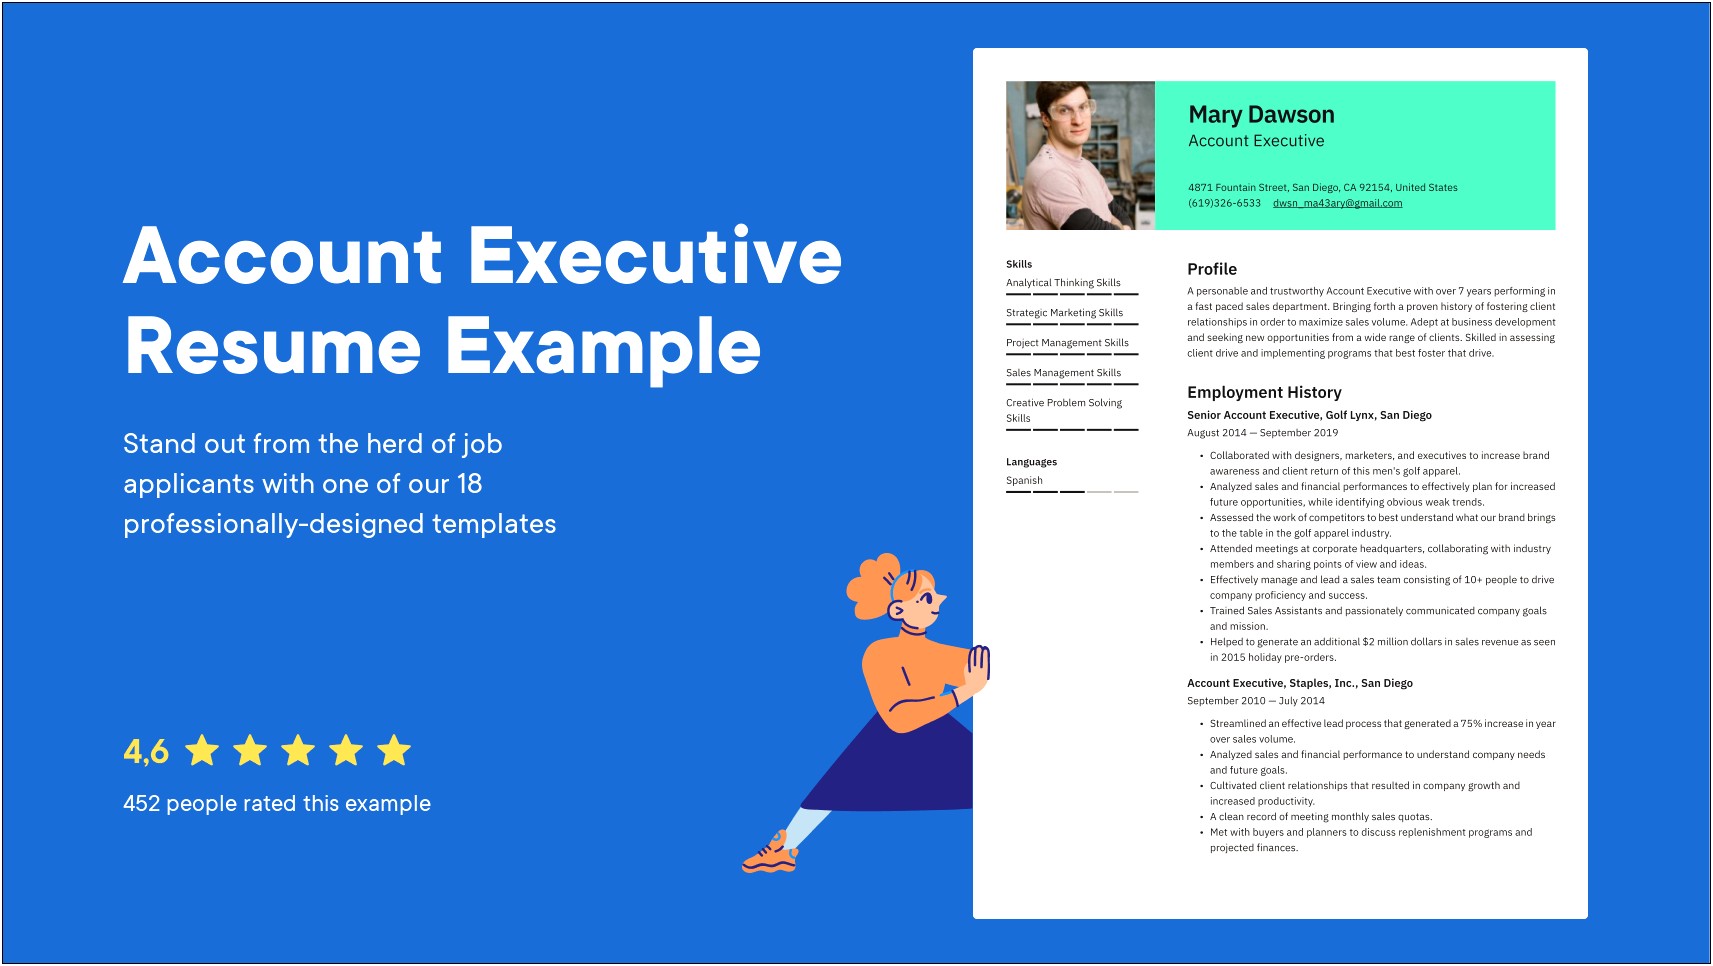 Yelp Account Executive Job Description For A Resume